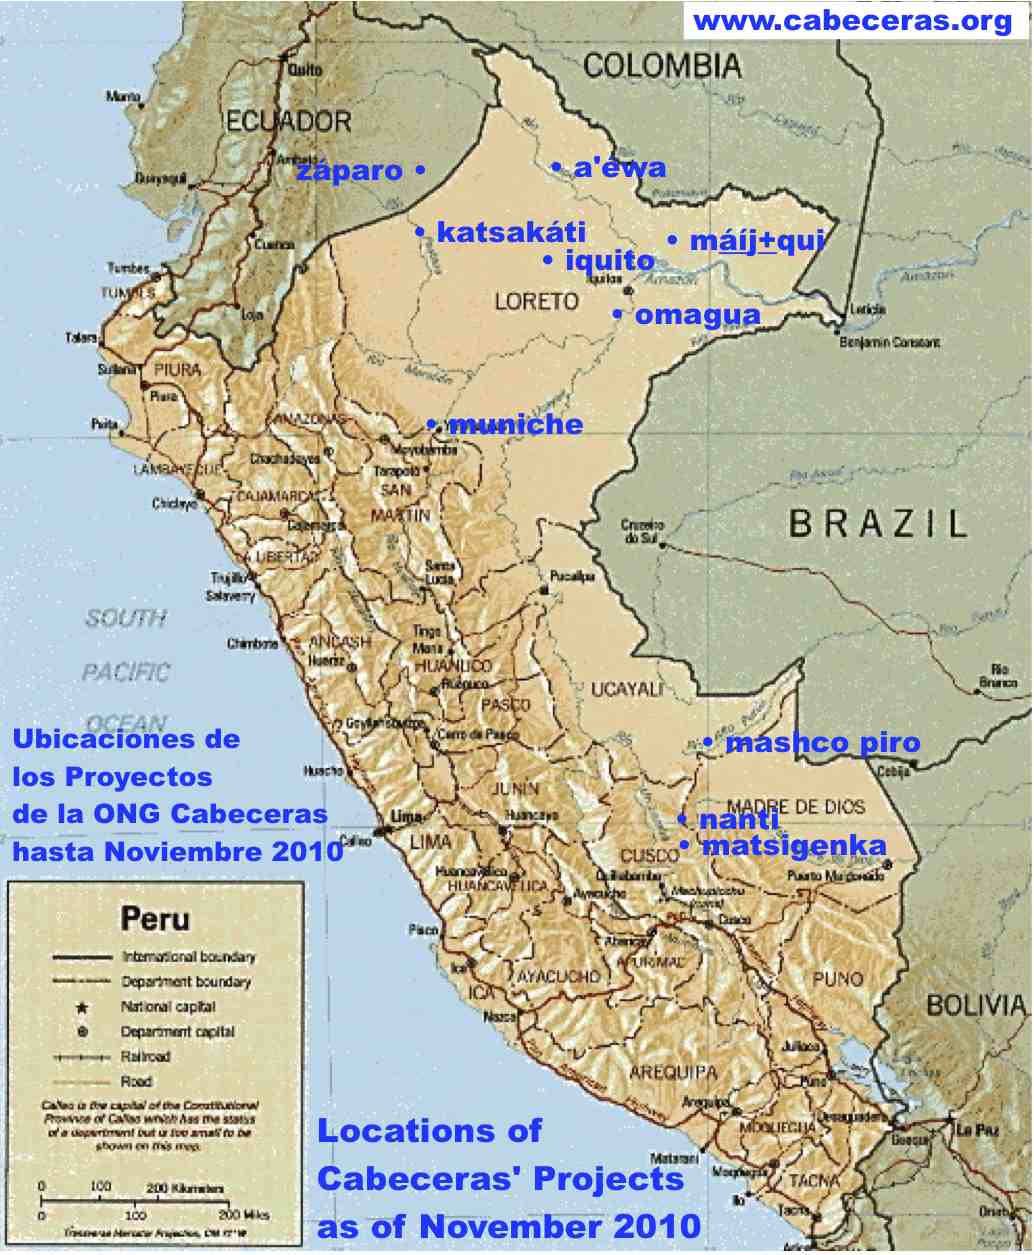 Cabeceras map 2010